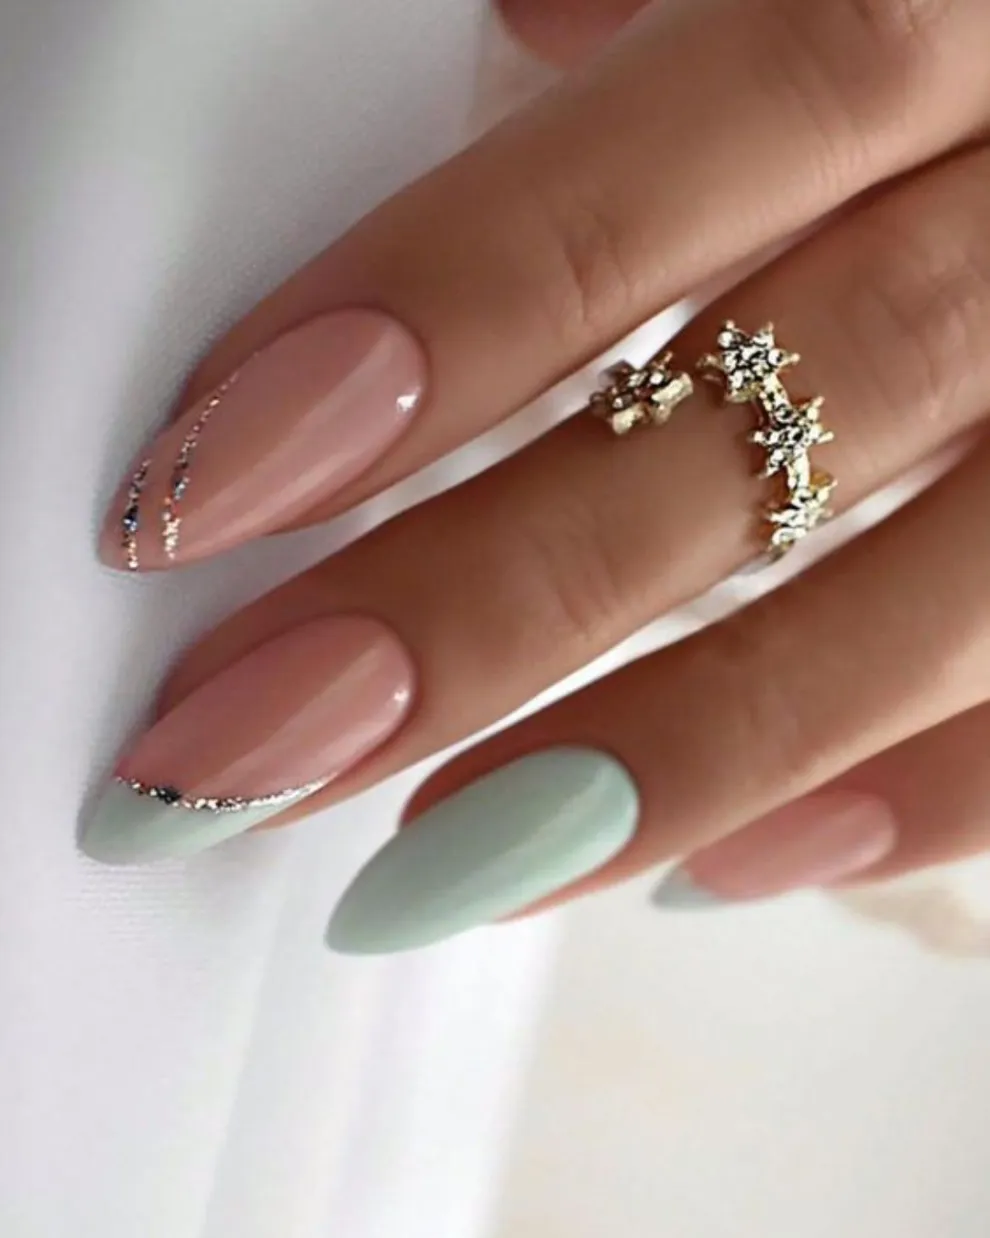 A tu nail art, por ejemplo unas francesitas, le sumás unas líneas en un tono con brillitos.